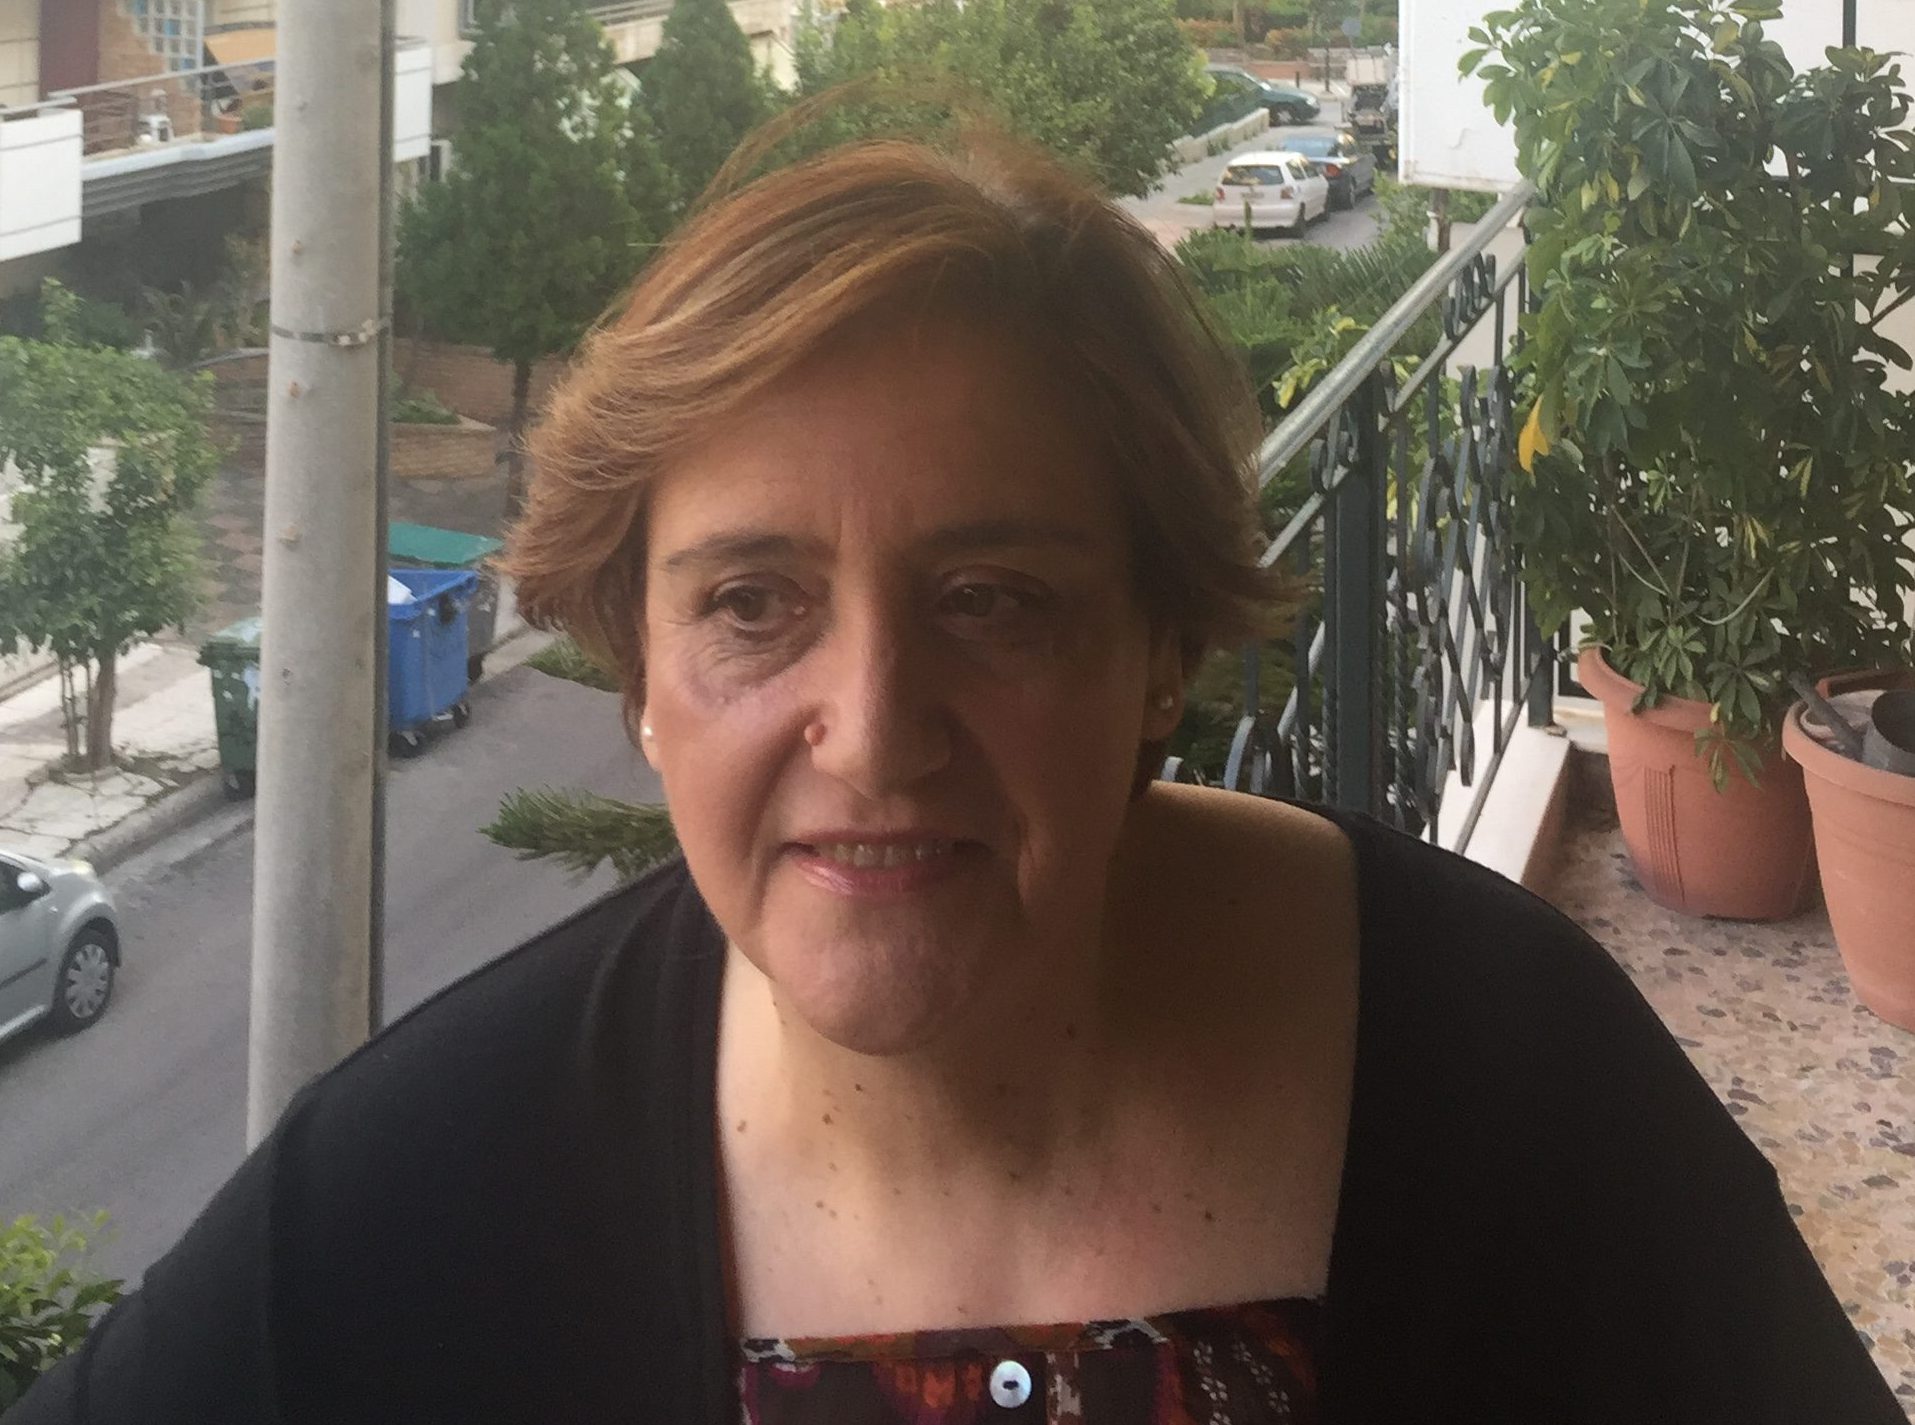 Μούση Βάνα Υποψήφια Δημοτική Σύμβουλος Νίκαιας – Ρέντη με τη Δημοτική Κίνηση Πολιτών «Κόντρα στο Ρεύμα».